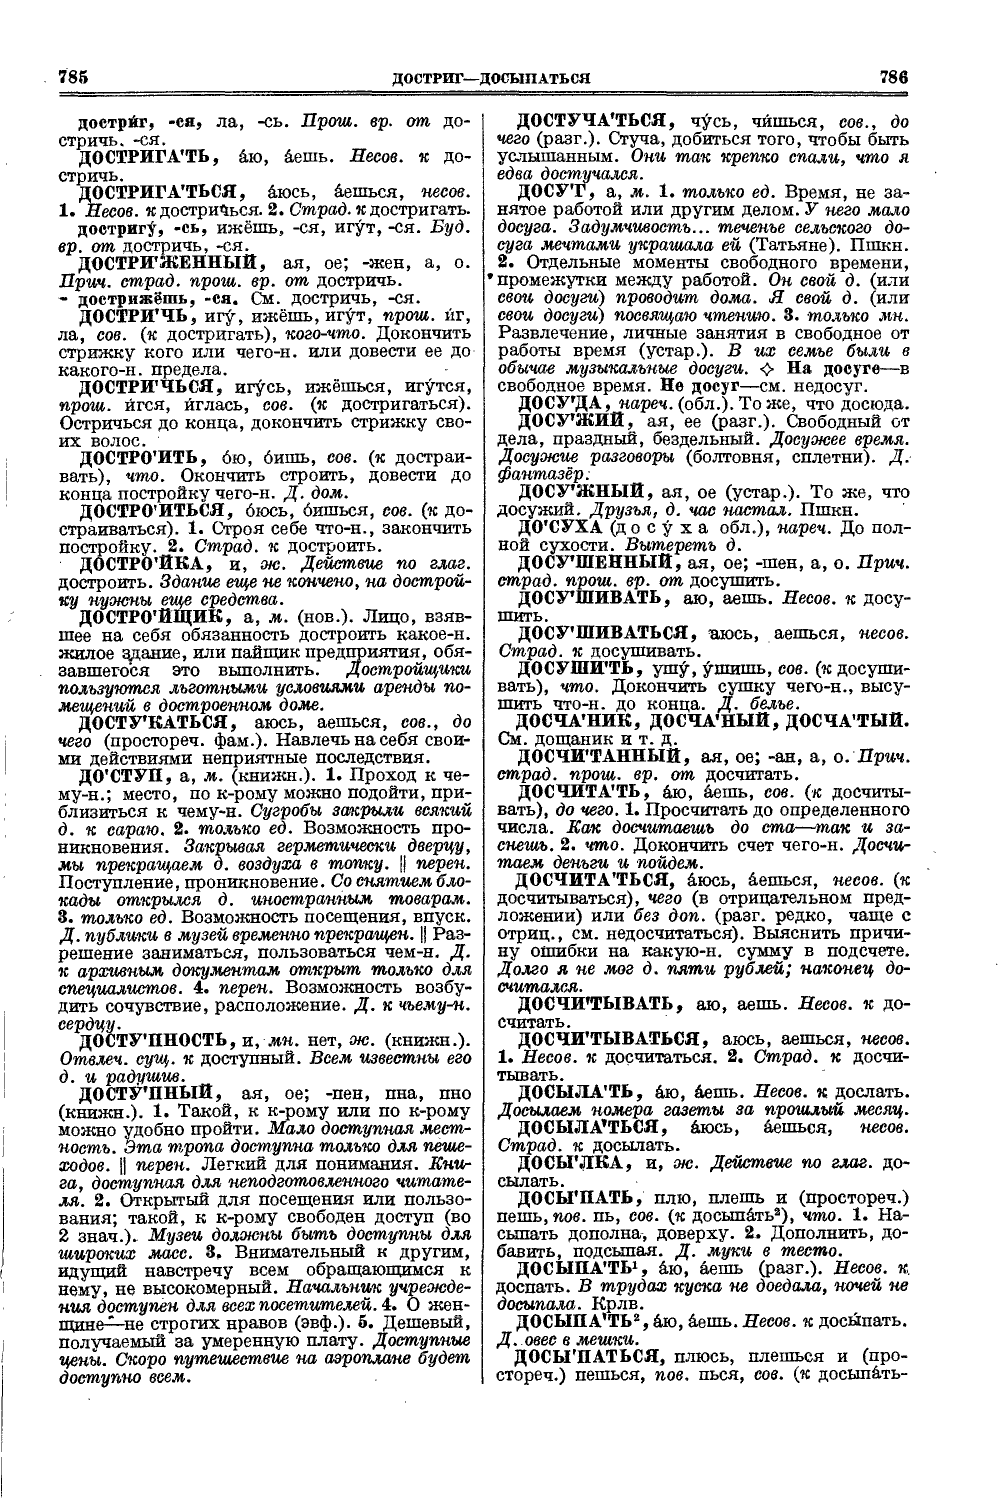 Фотокопия pdf / скан страницы 431 толкового словаря Ушакова (том 1)